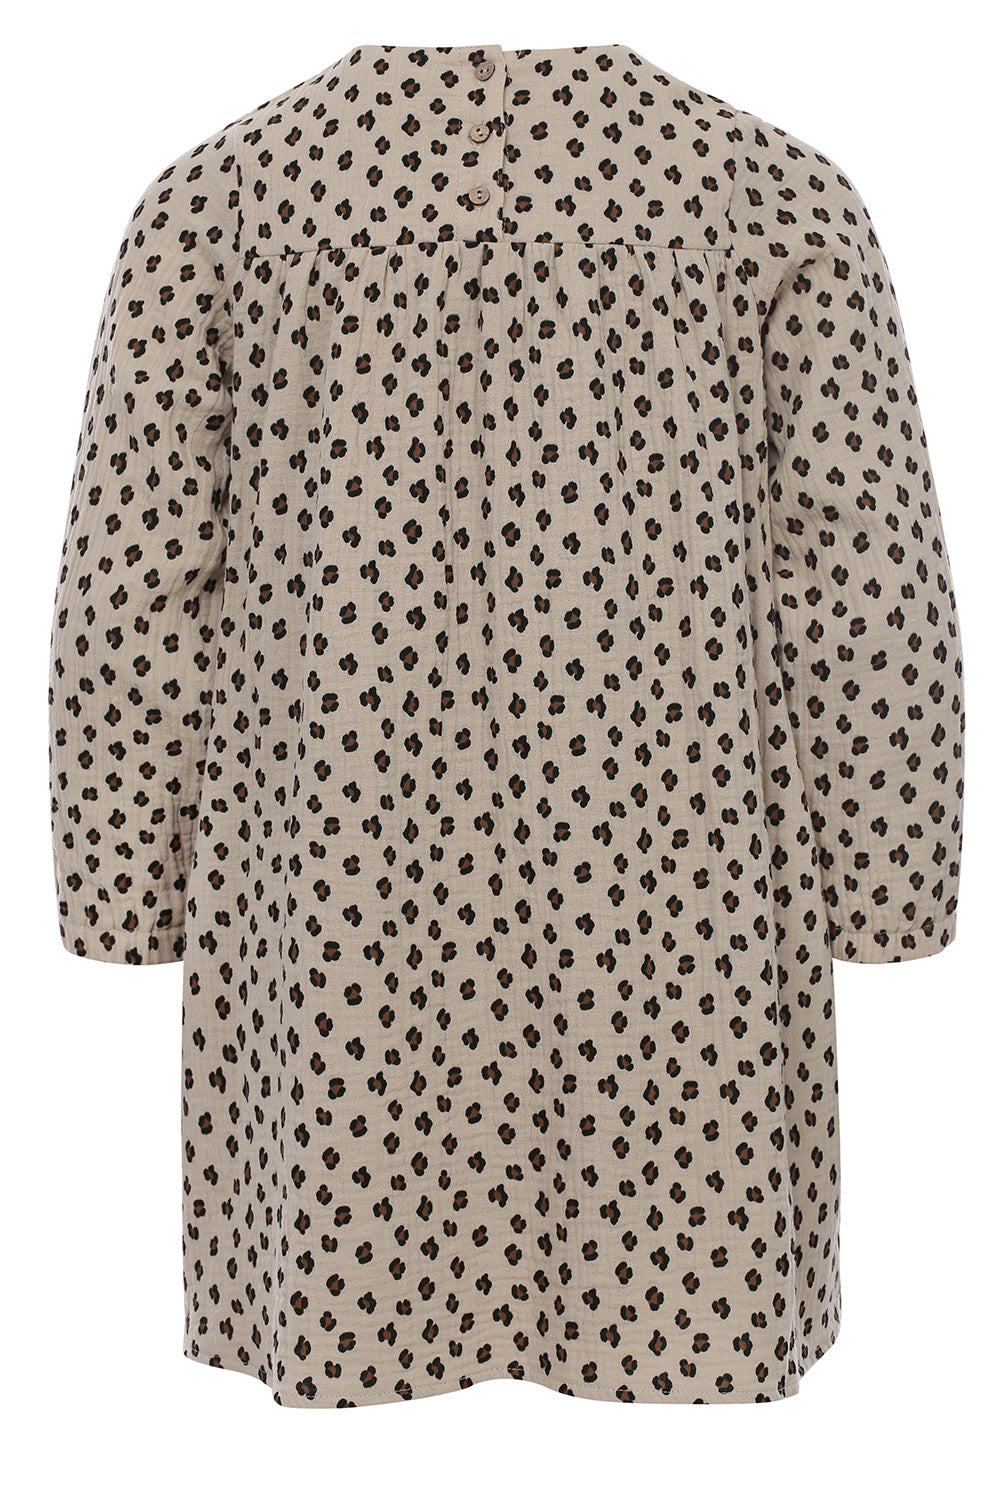 Meisjes Printed Mousseline Wide Dress van  in de kleur little leopard in maat 128.